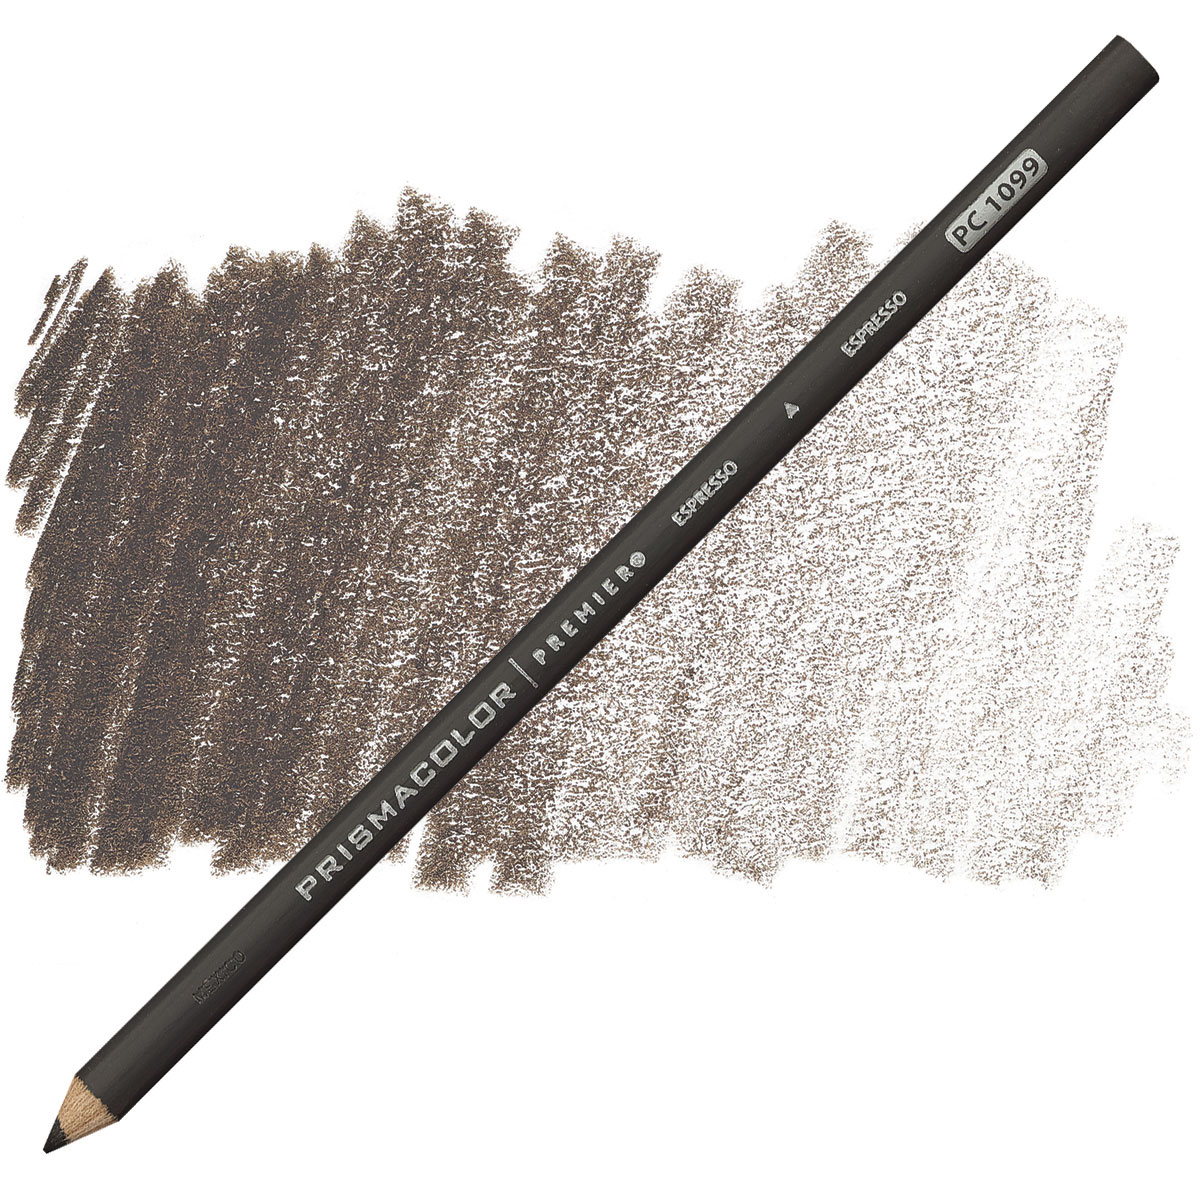 Prismacolor Premier Soft Core Colored Pencil – Espresso